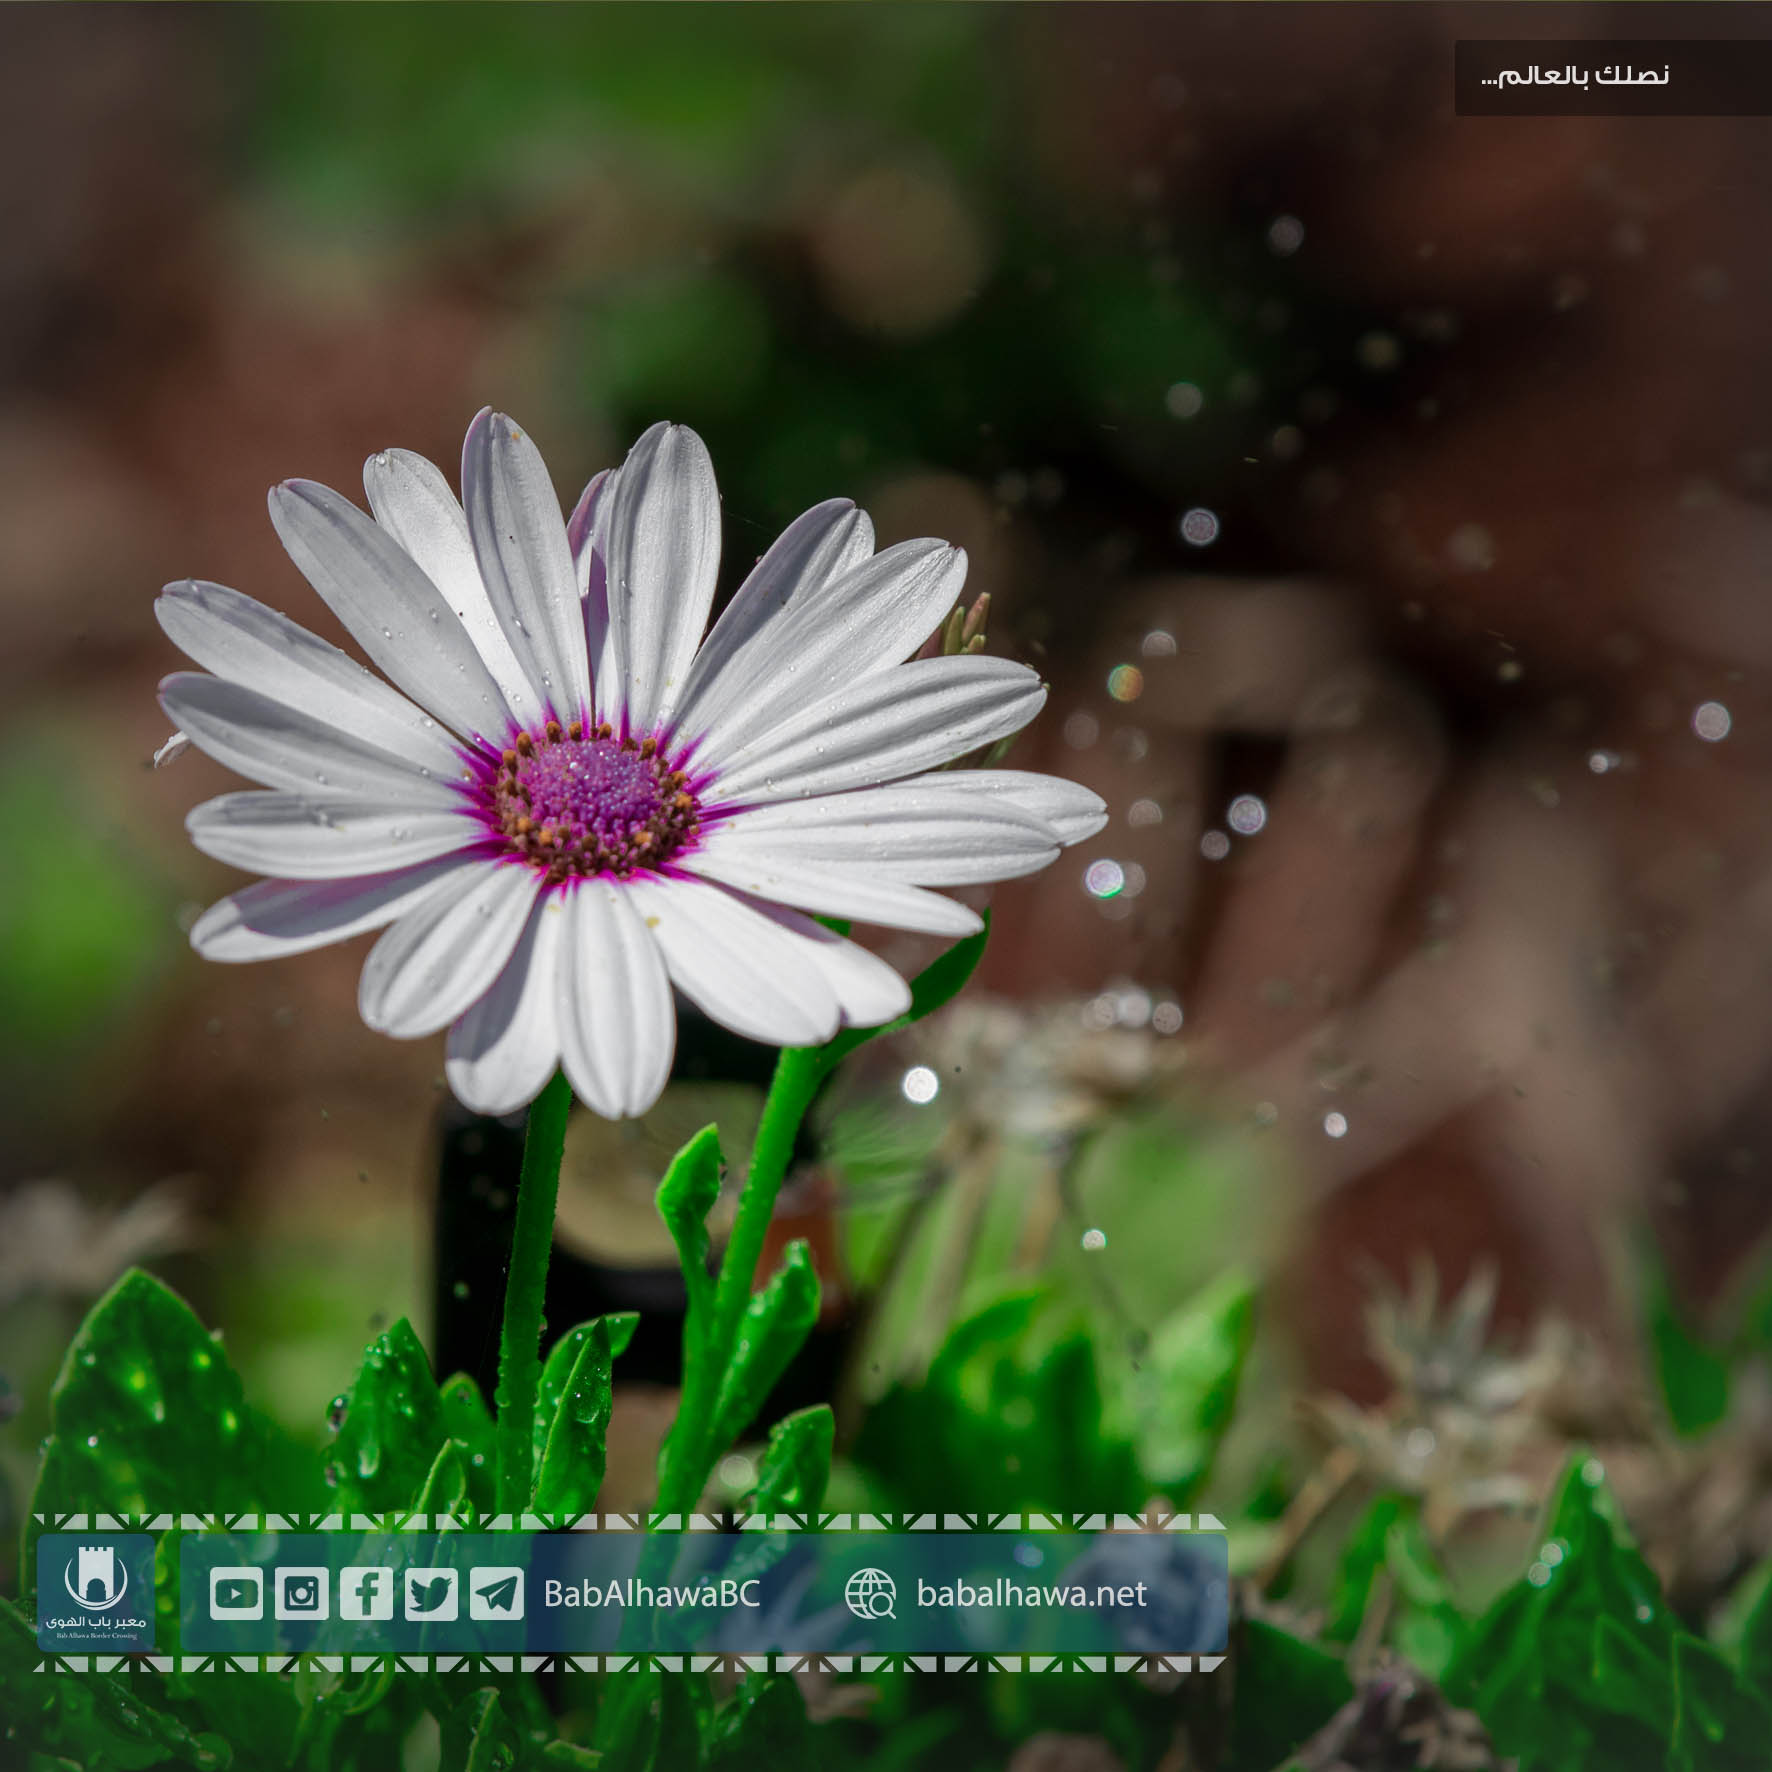 زهرة في حديقة معبر باب الهوى الحدودي - سوريا